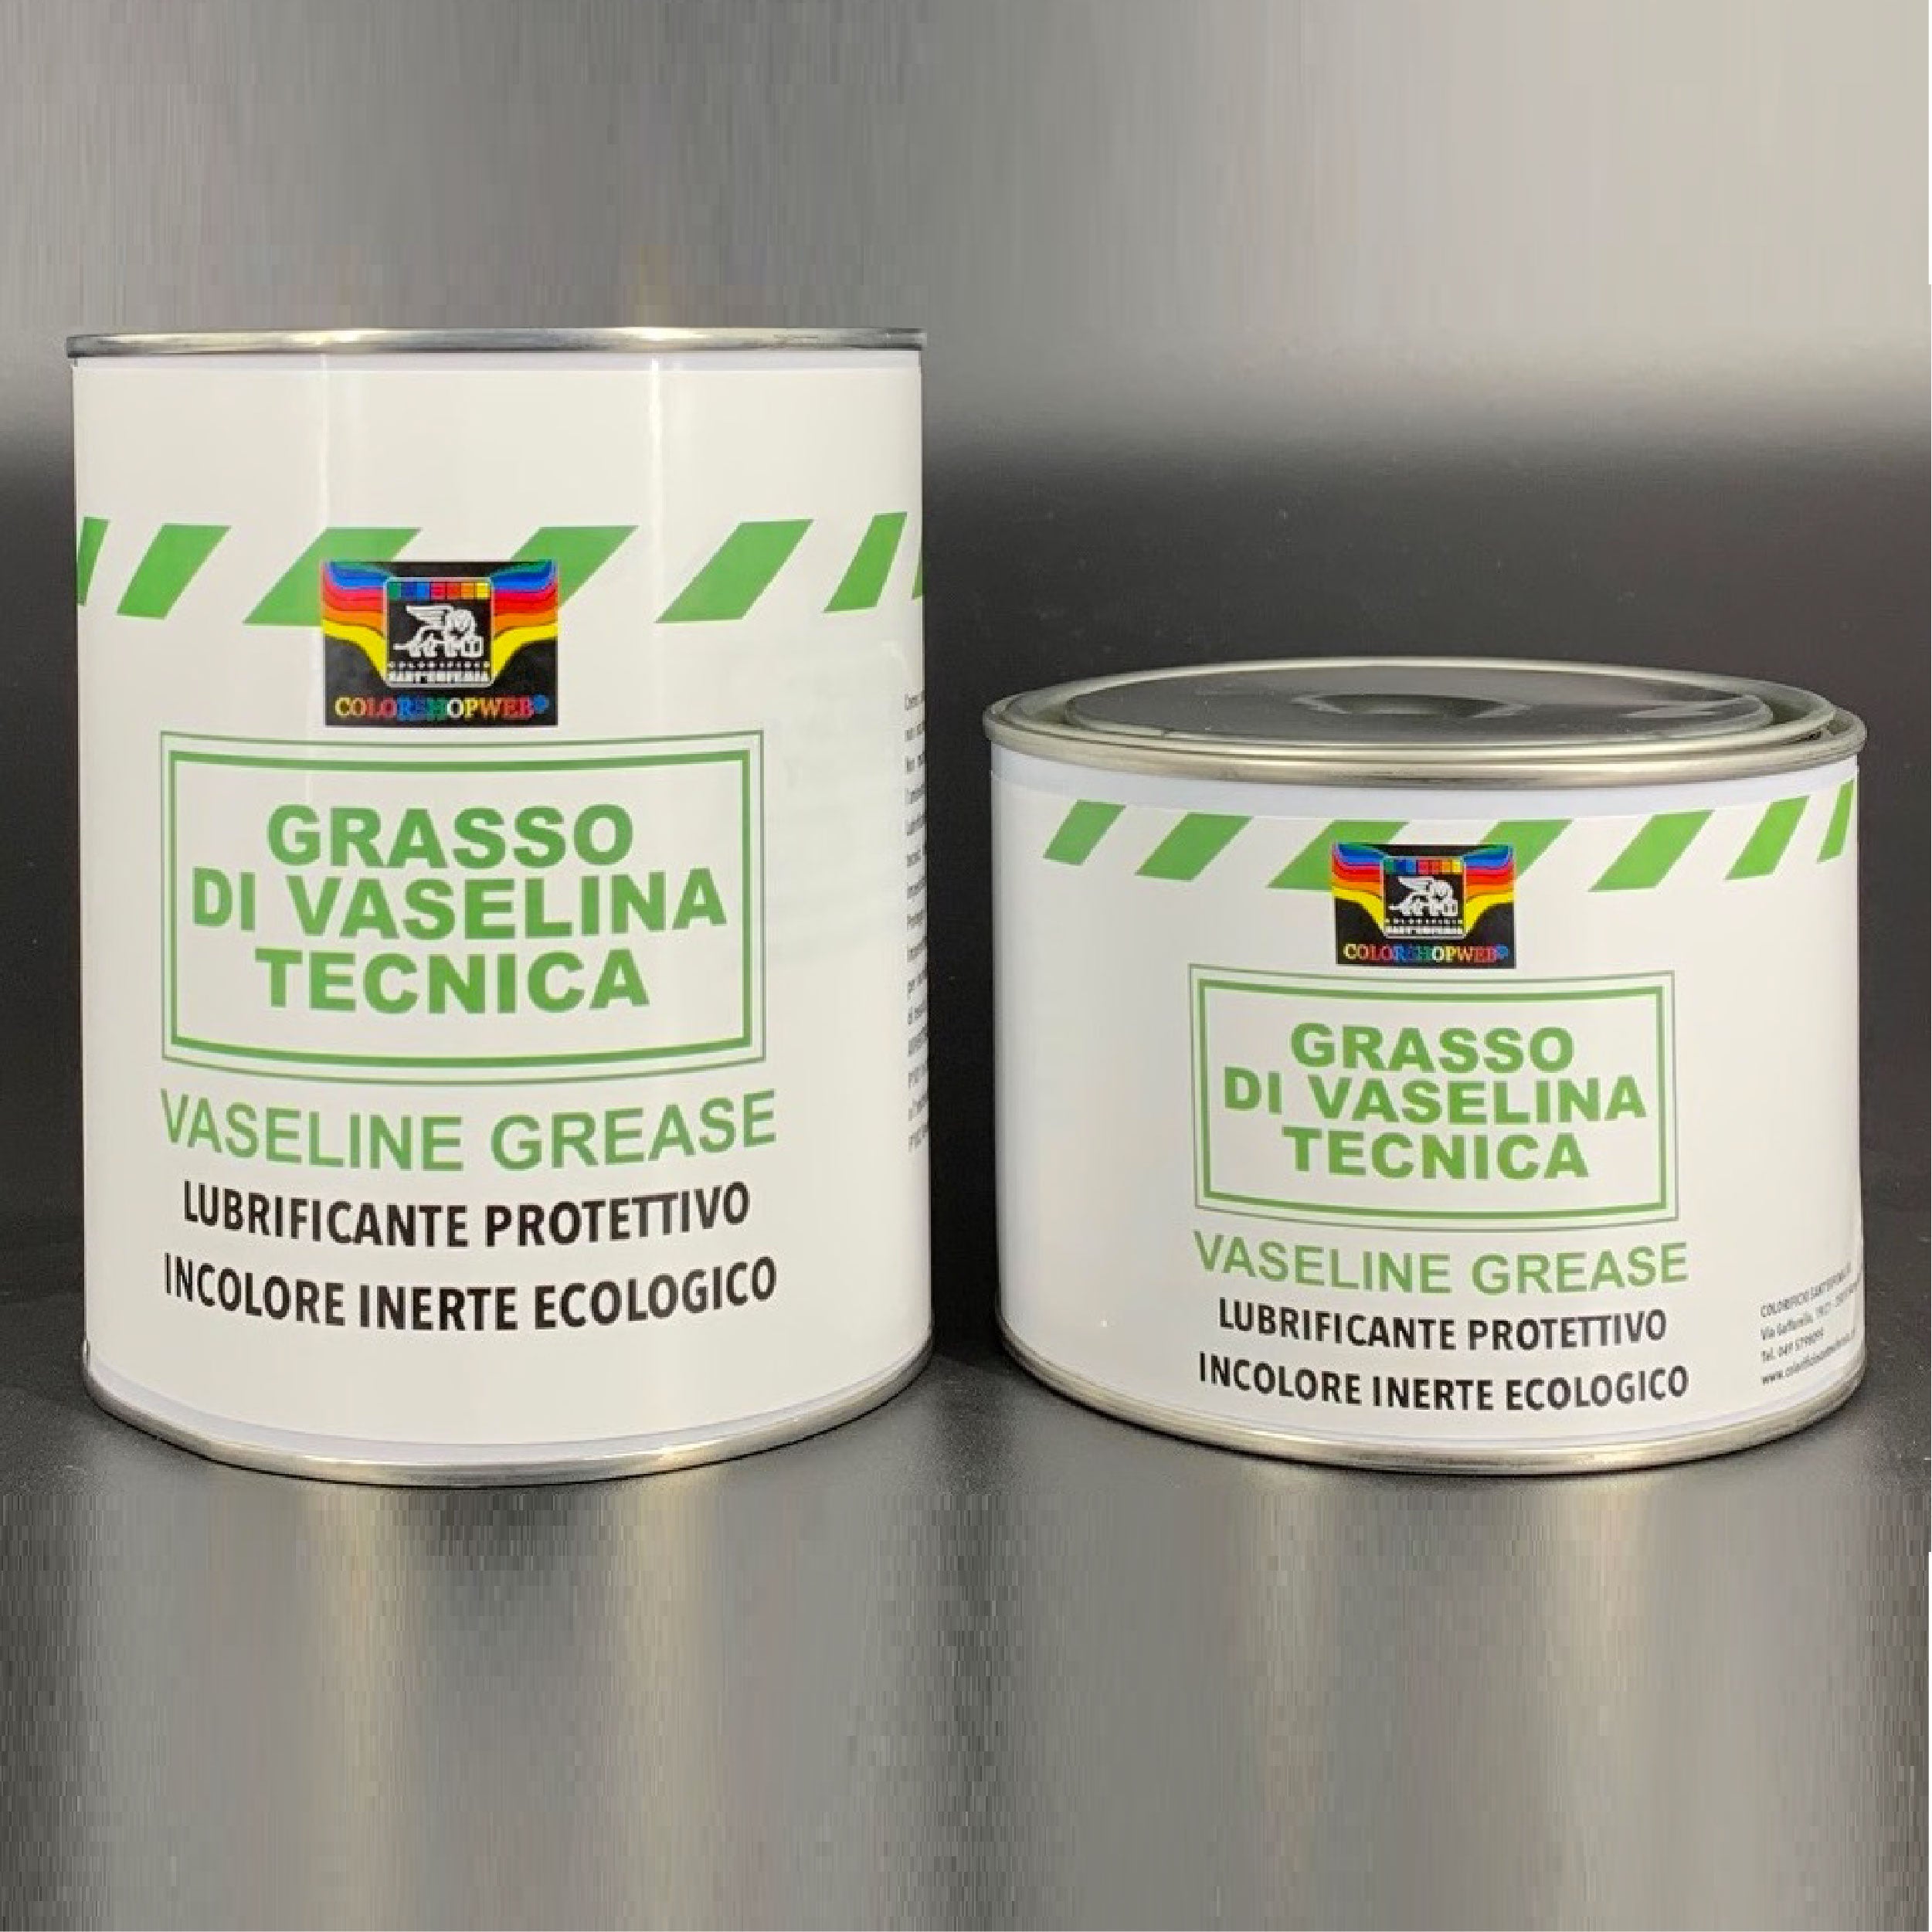 Grasso di vaselina gv930 900 gr. - Eco service - Colori, vernici